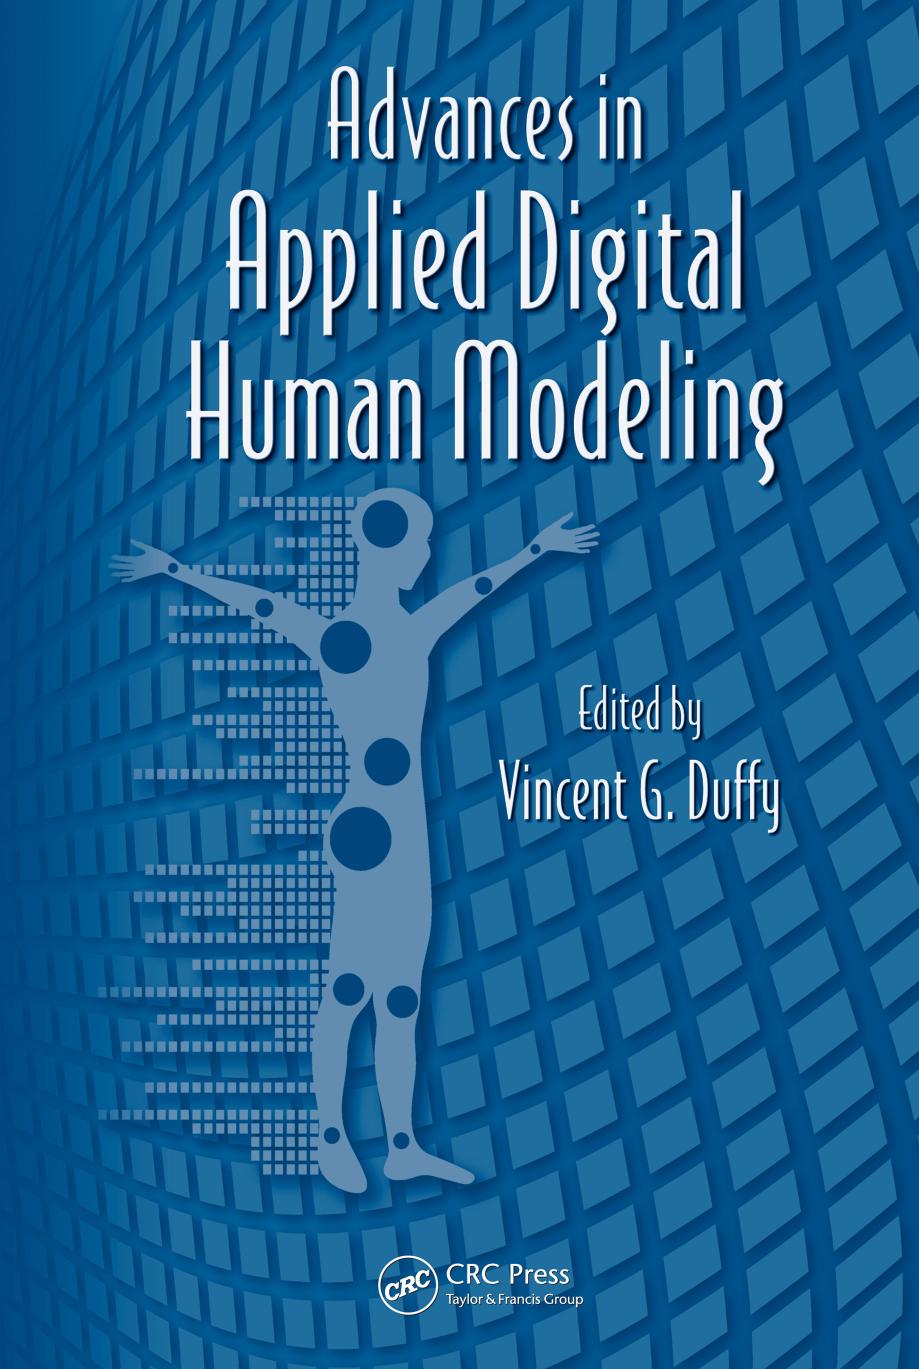 Advances in applied digital human modeling